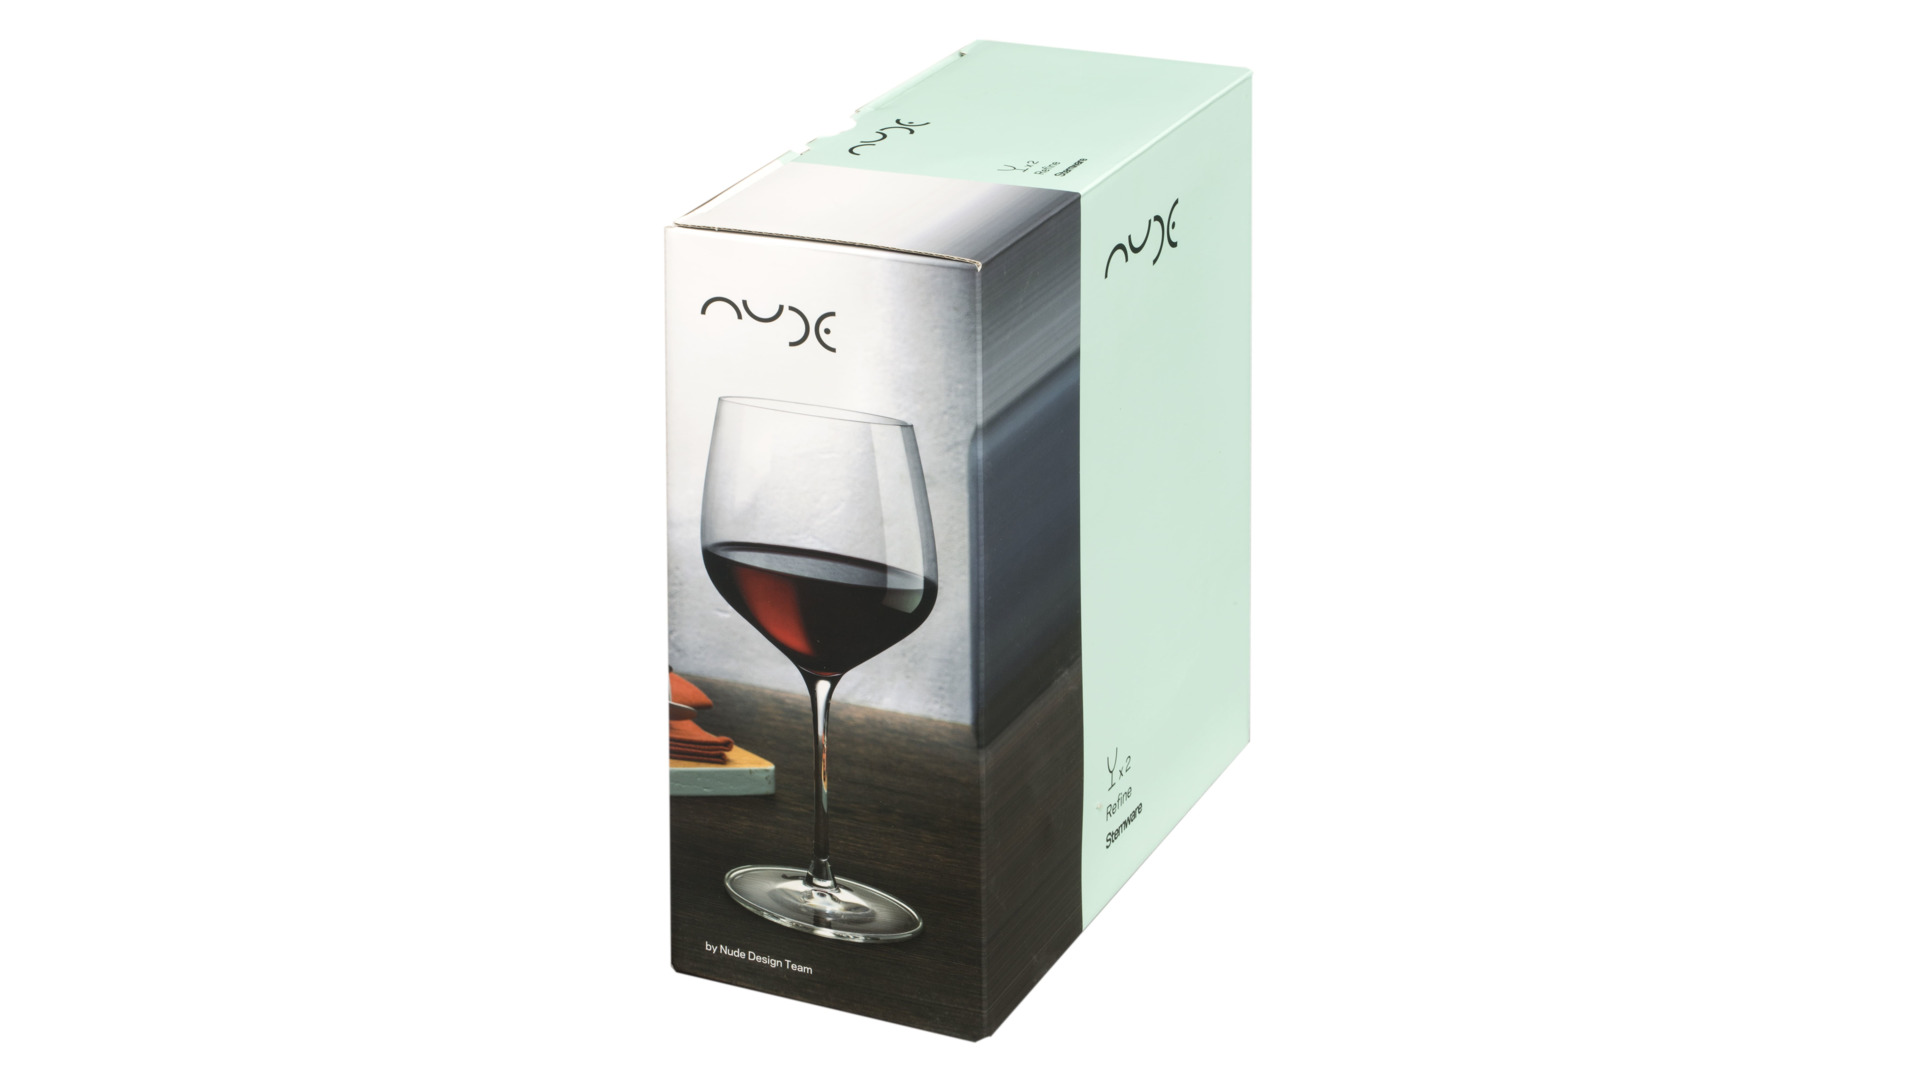 Набор бокалов для красного вина Nude Glass Совершенство 625 мл, 2 шт, стекло хрустальное